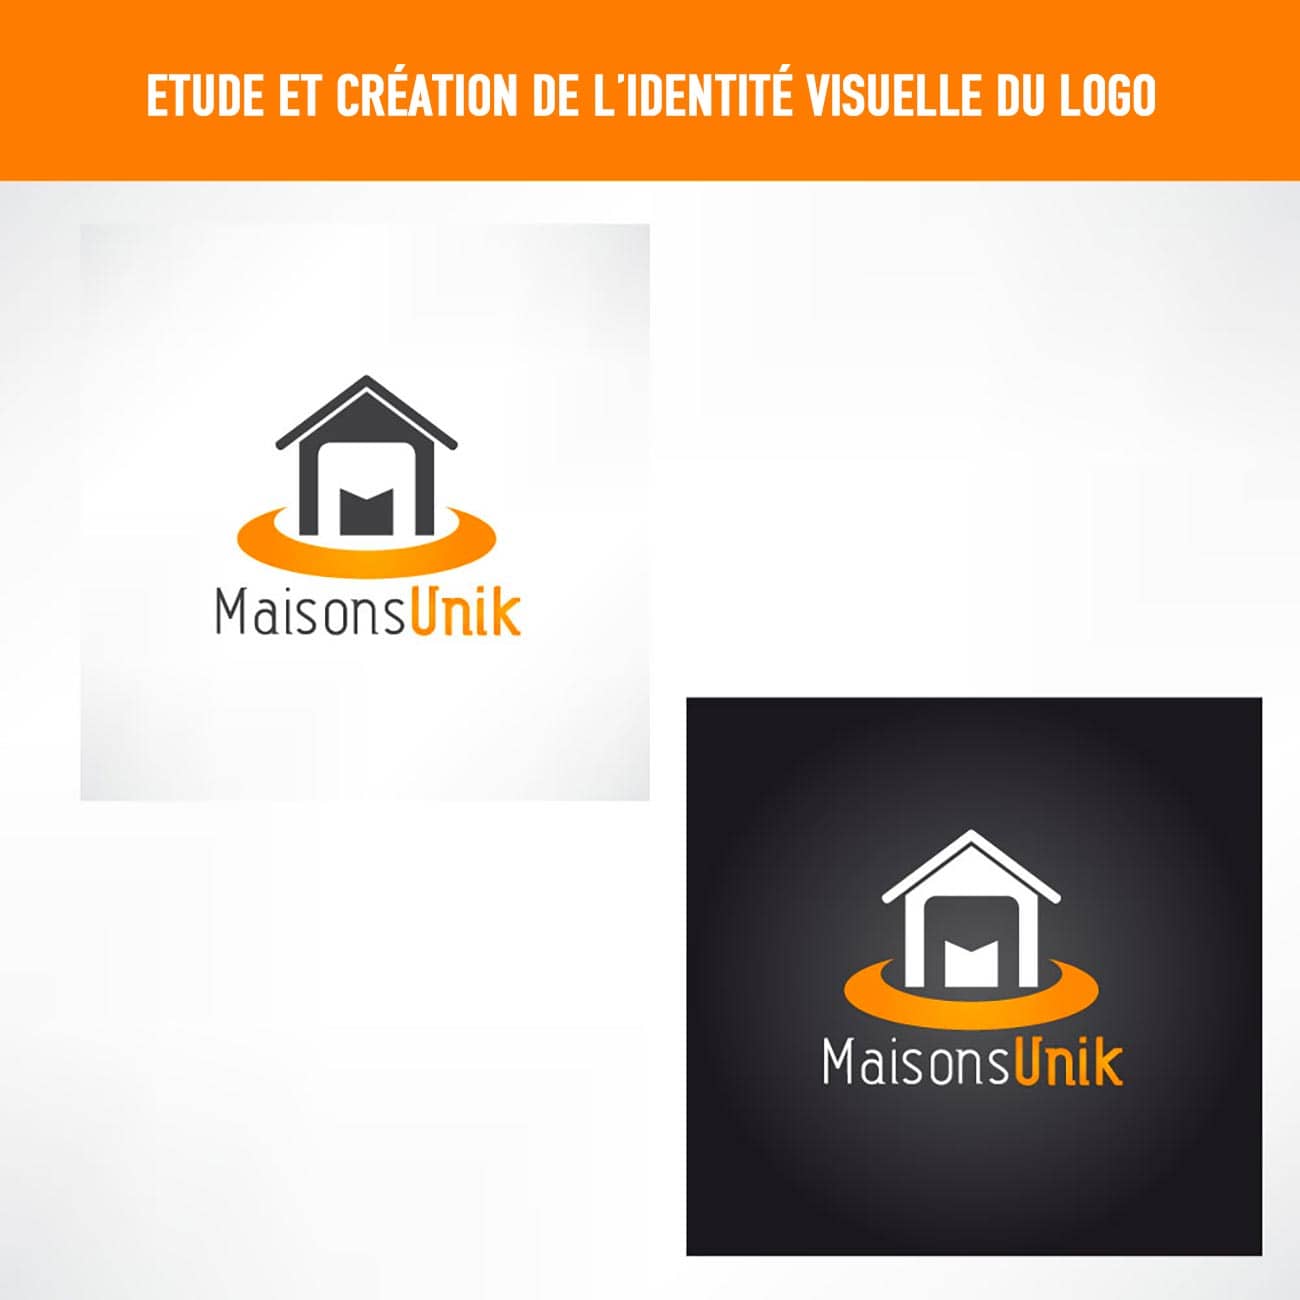 Roxane_studio_agence_publicitaire_liege_Maisons_unik_logo02